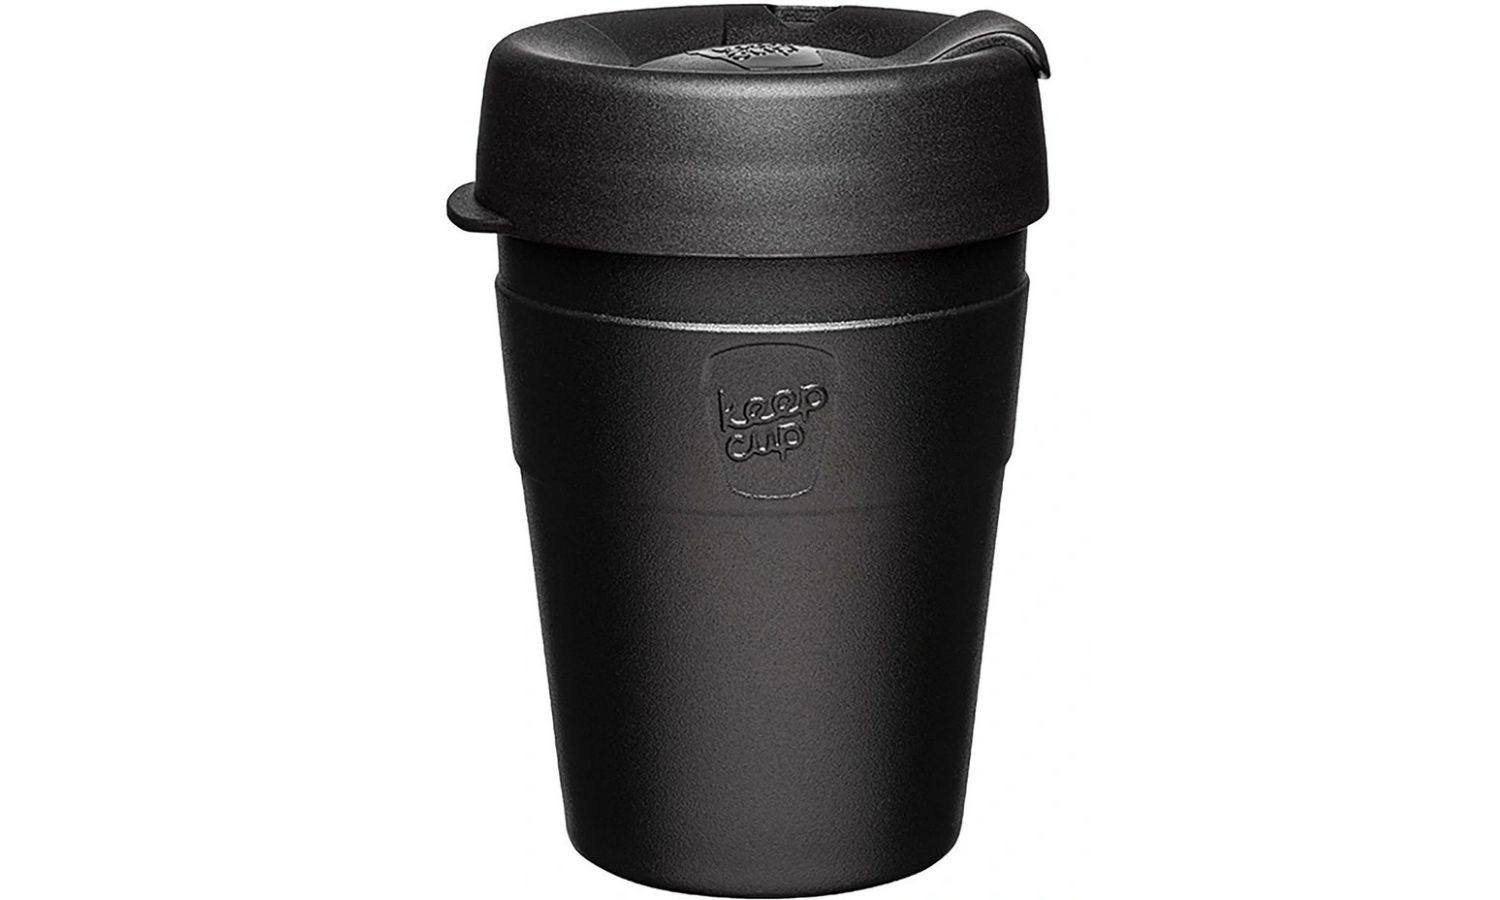 KeepCup thermal cup